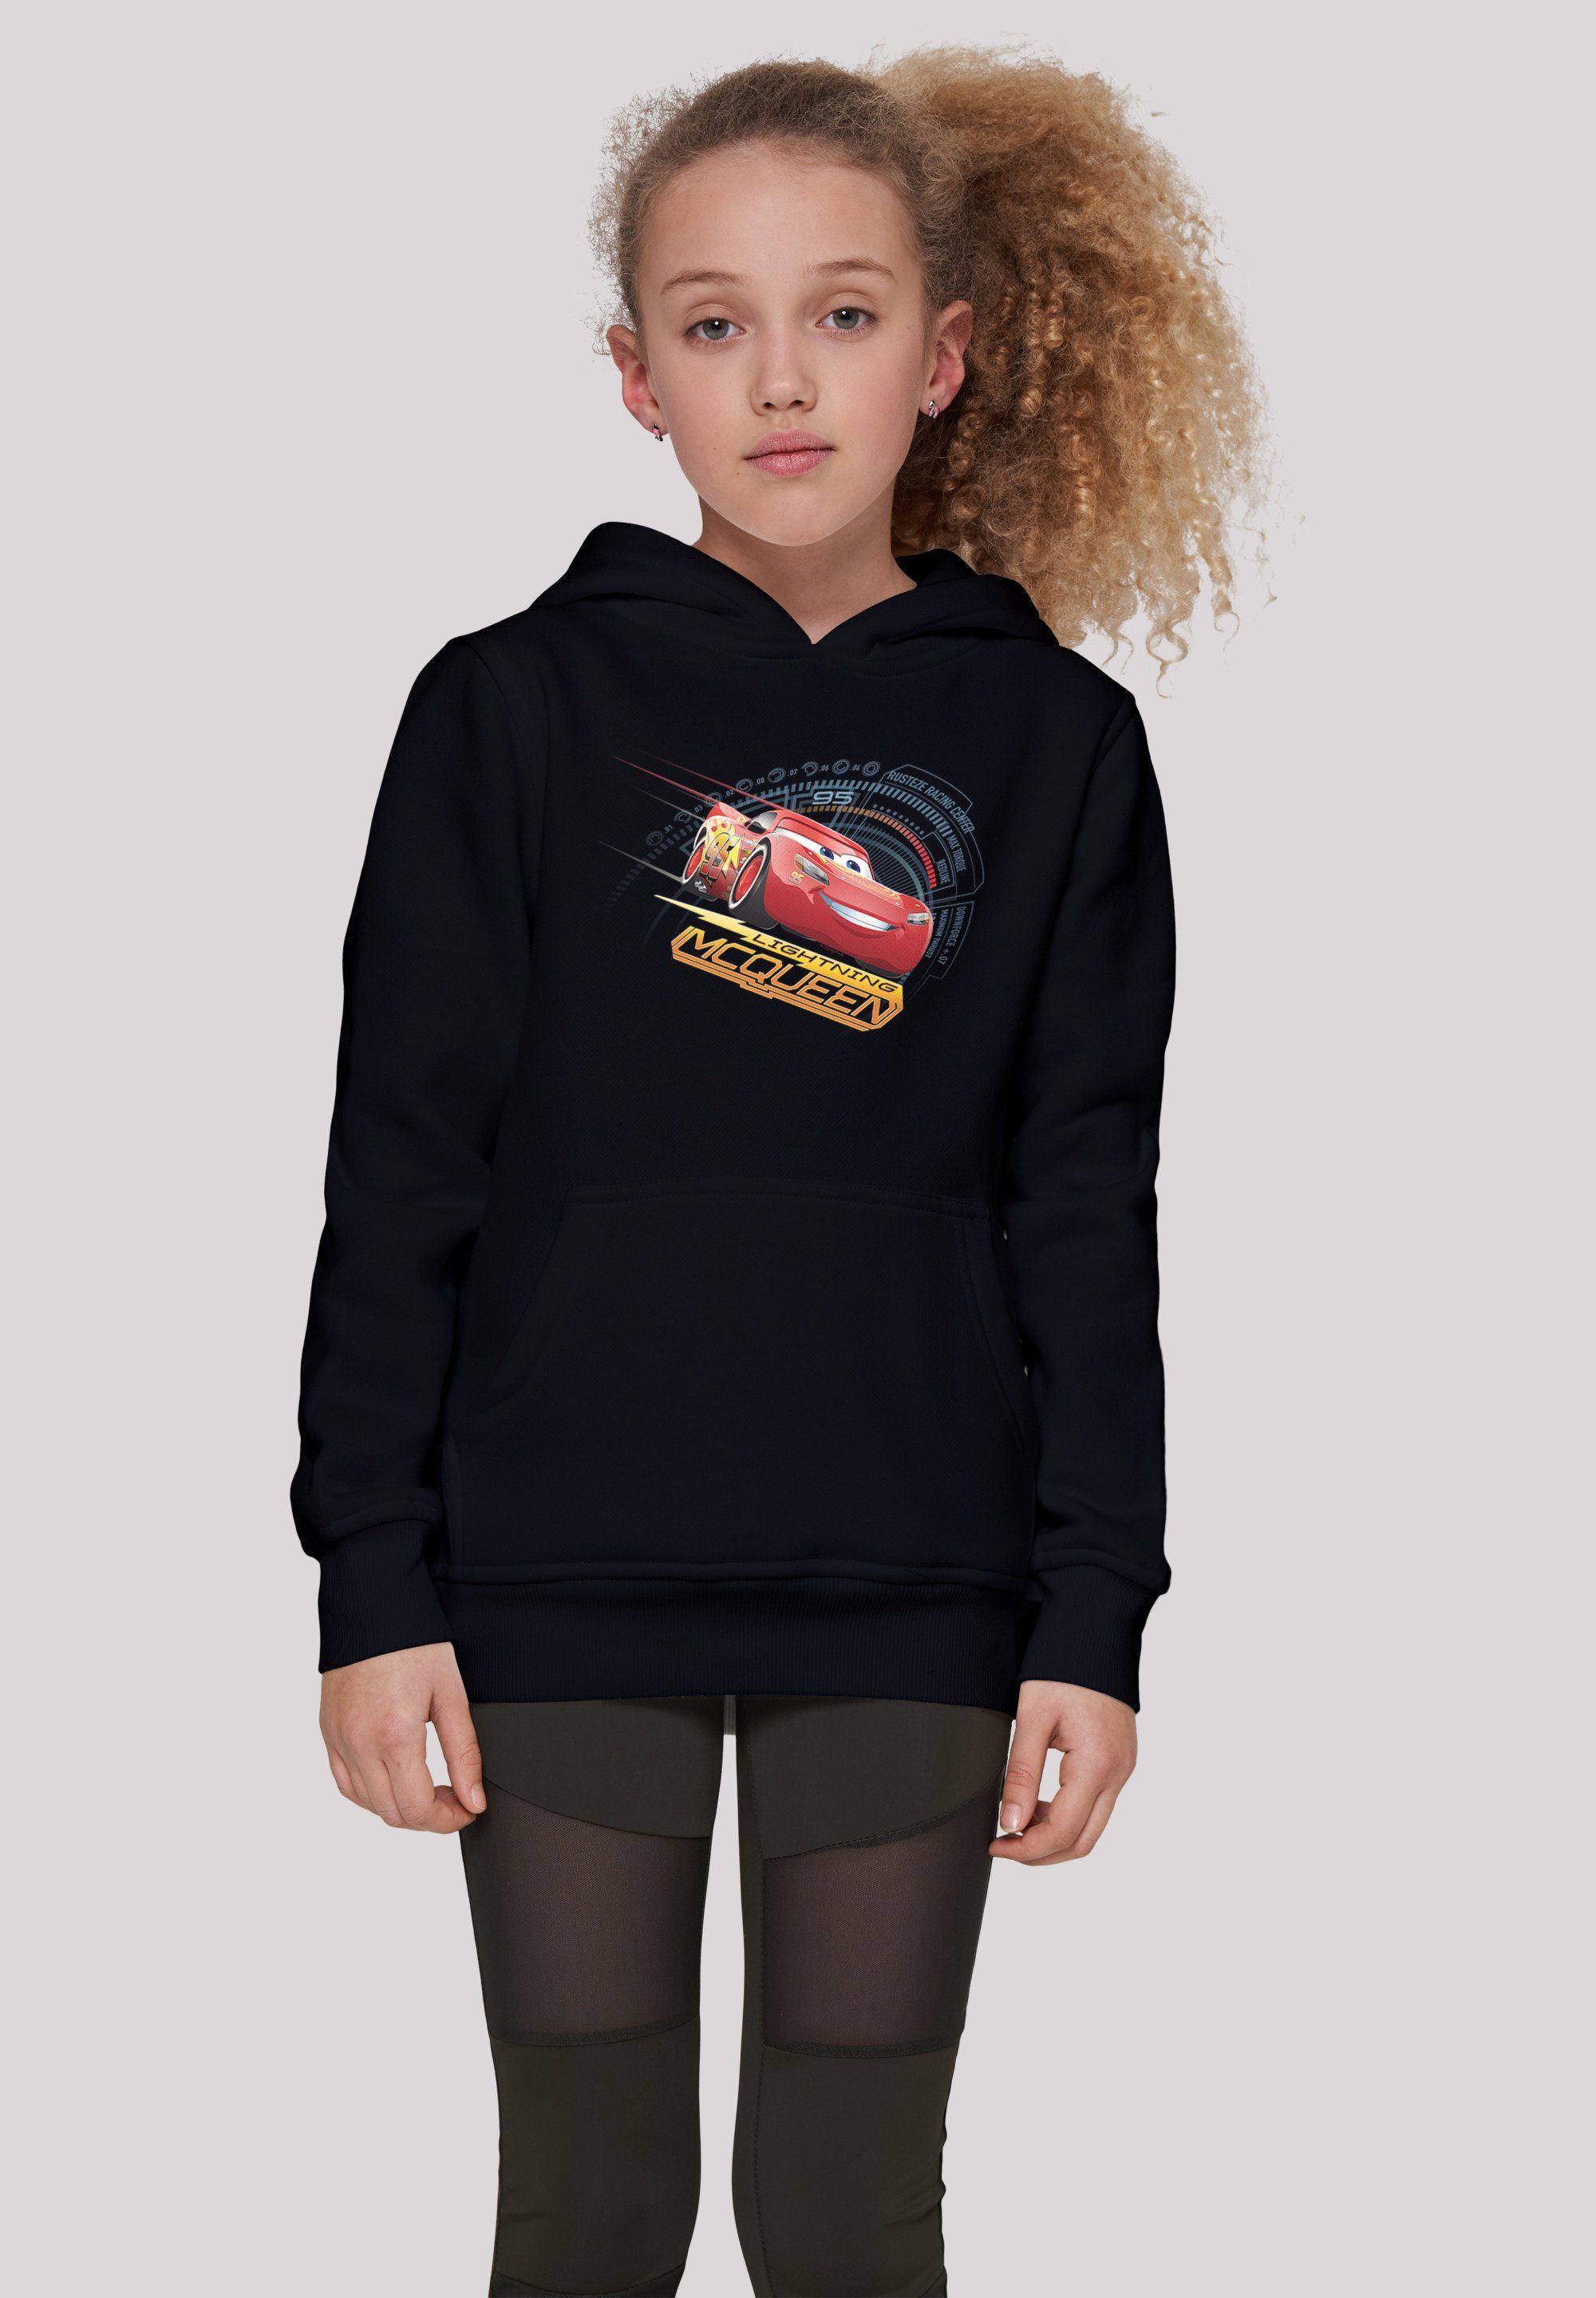 Sweatshirt Cars Kinder,Premium F4NT4STIC Lightning McQueen Disney Unisex schwarz Merch,Jungen,Mädchen,Bedruckt